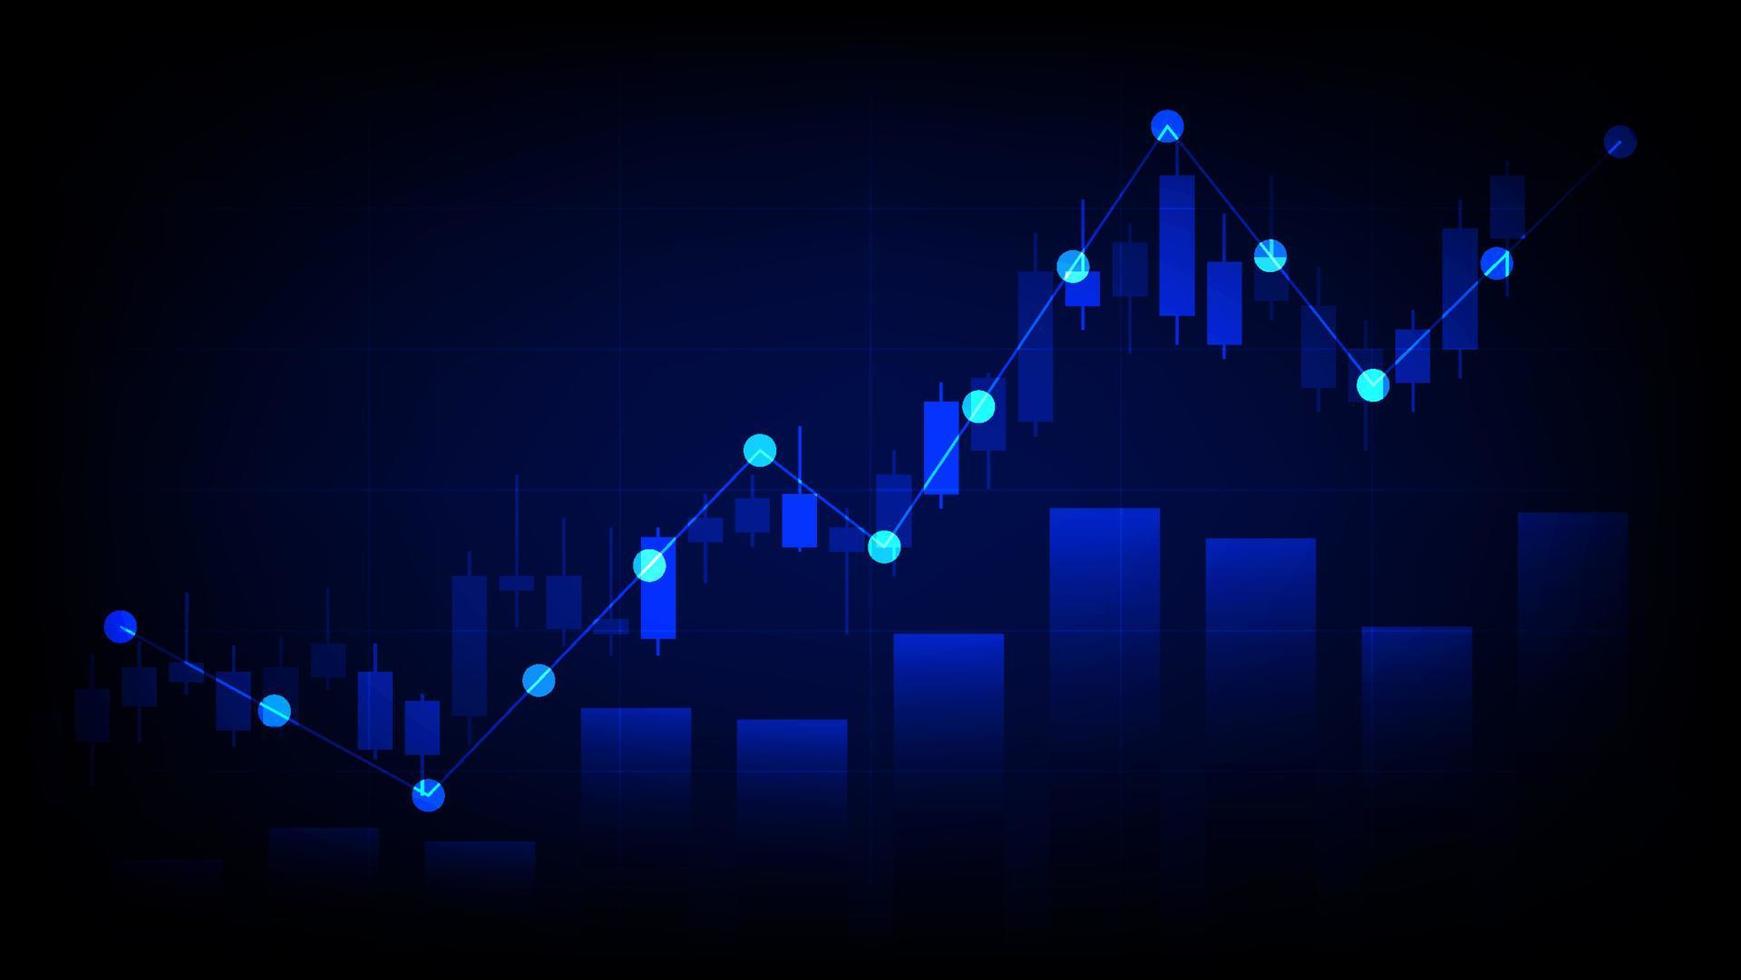 concepto de economía y finanzas. estadísticas de inversión empresarial financiera con candelabros del mercado de valores y gráfico de barras sobre fondo azul vector